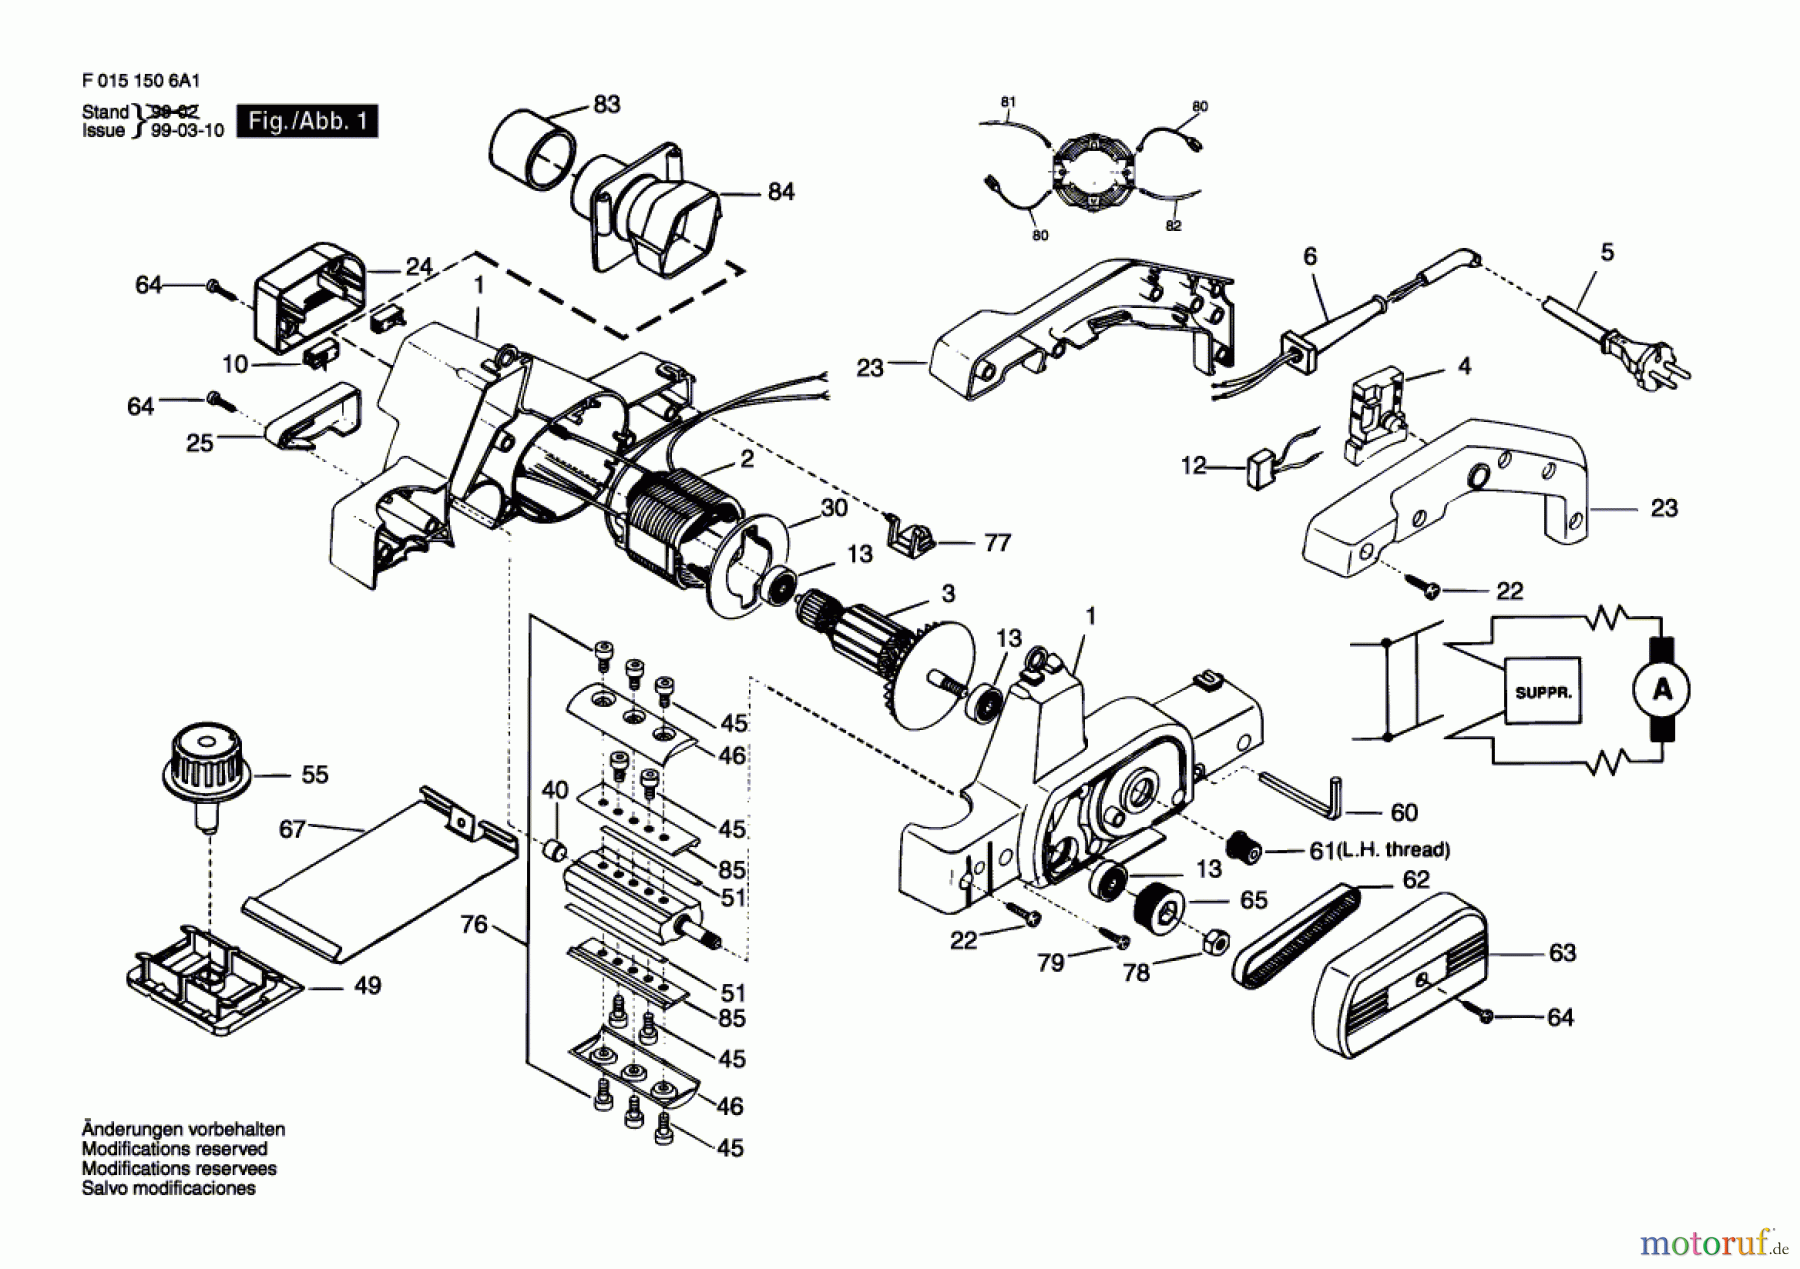  Bosch Werkzeug Handhobel 1506H1 Seite 1